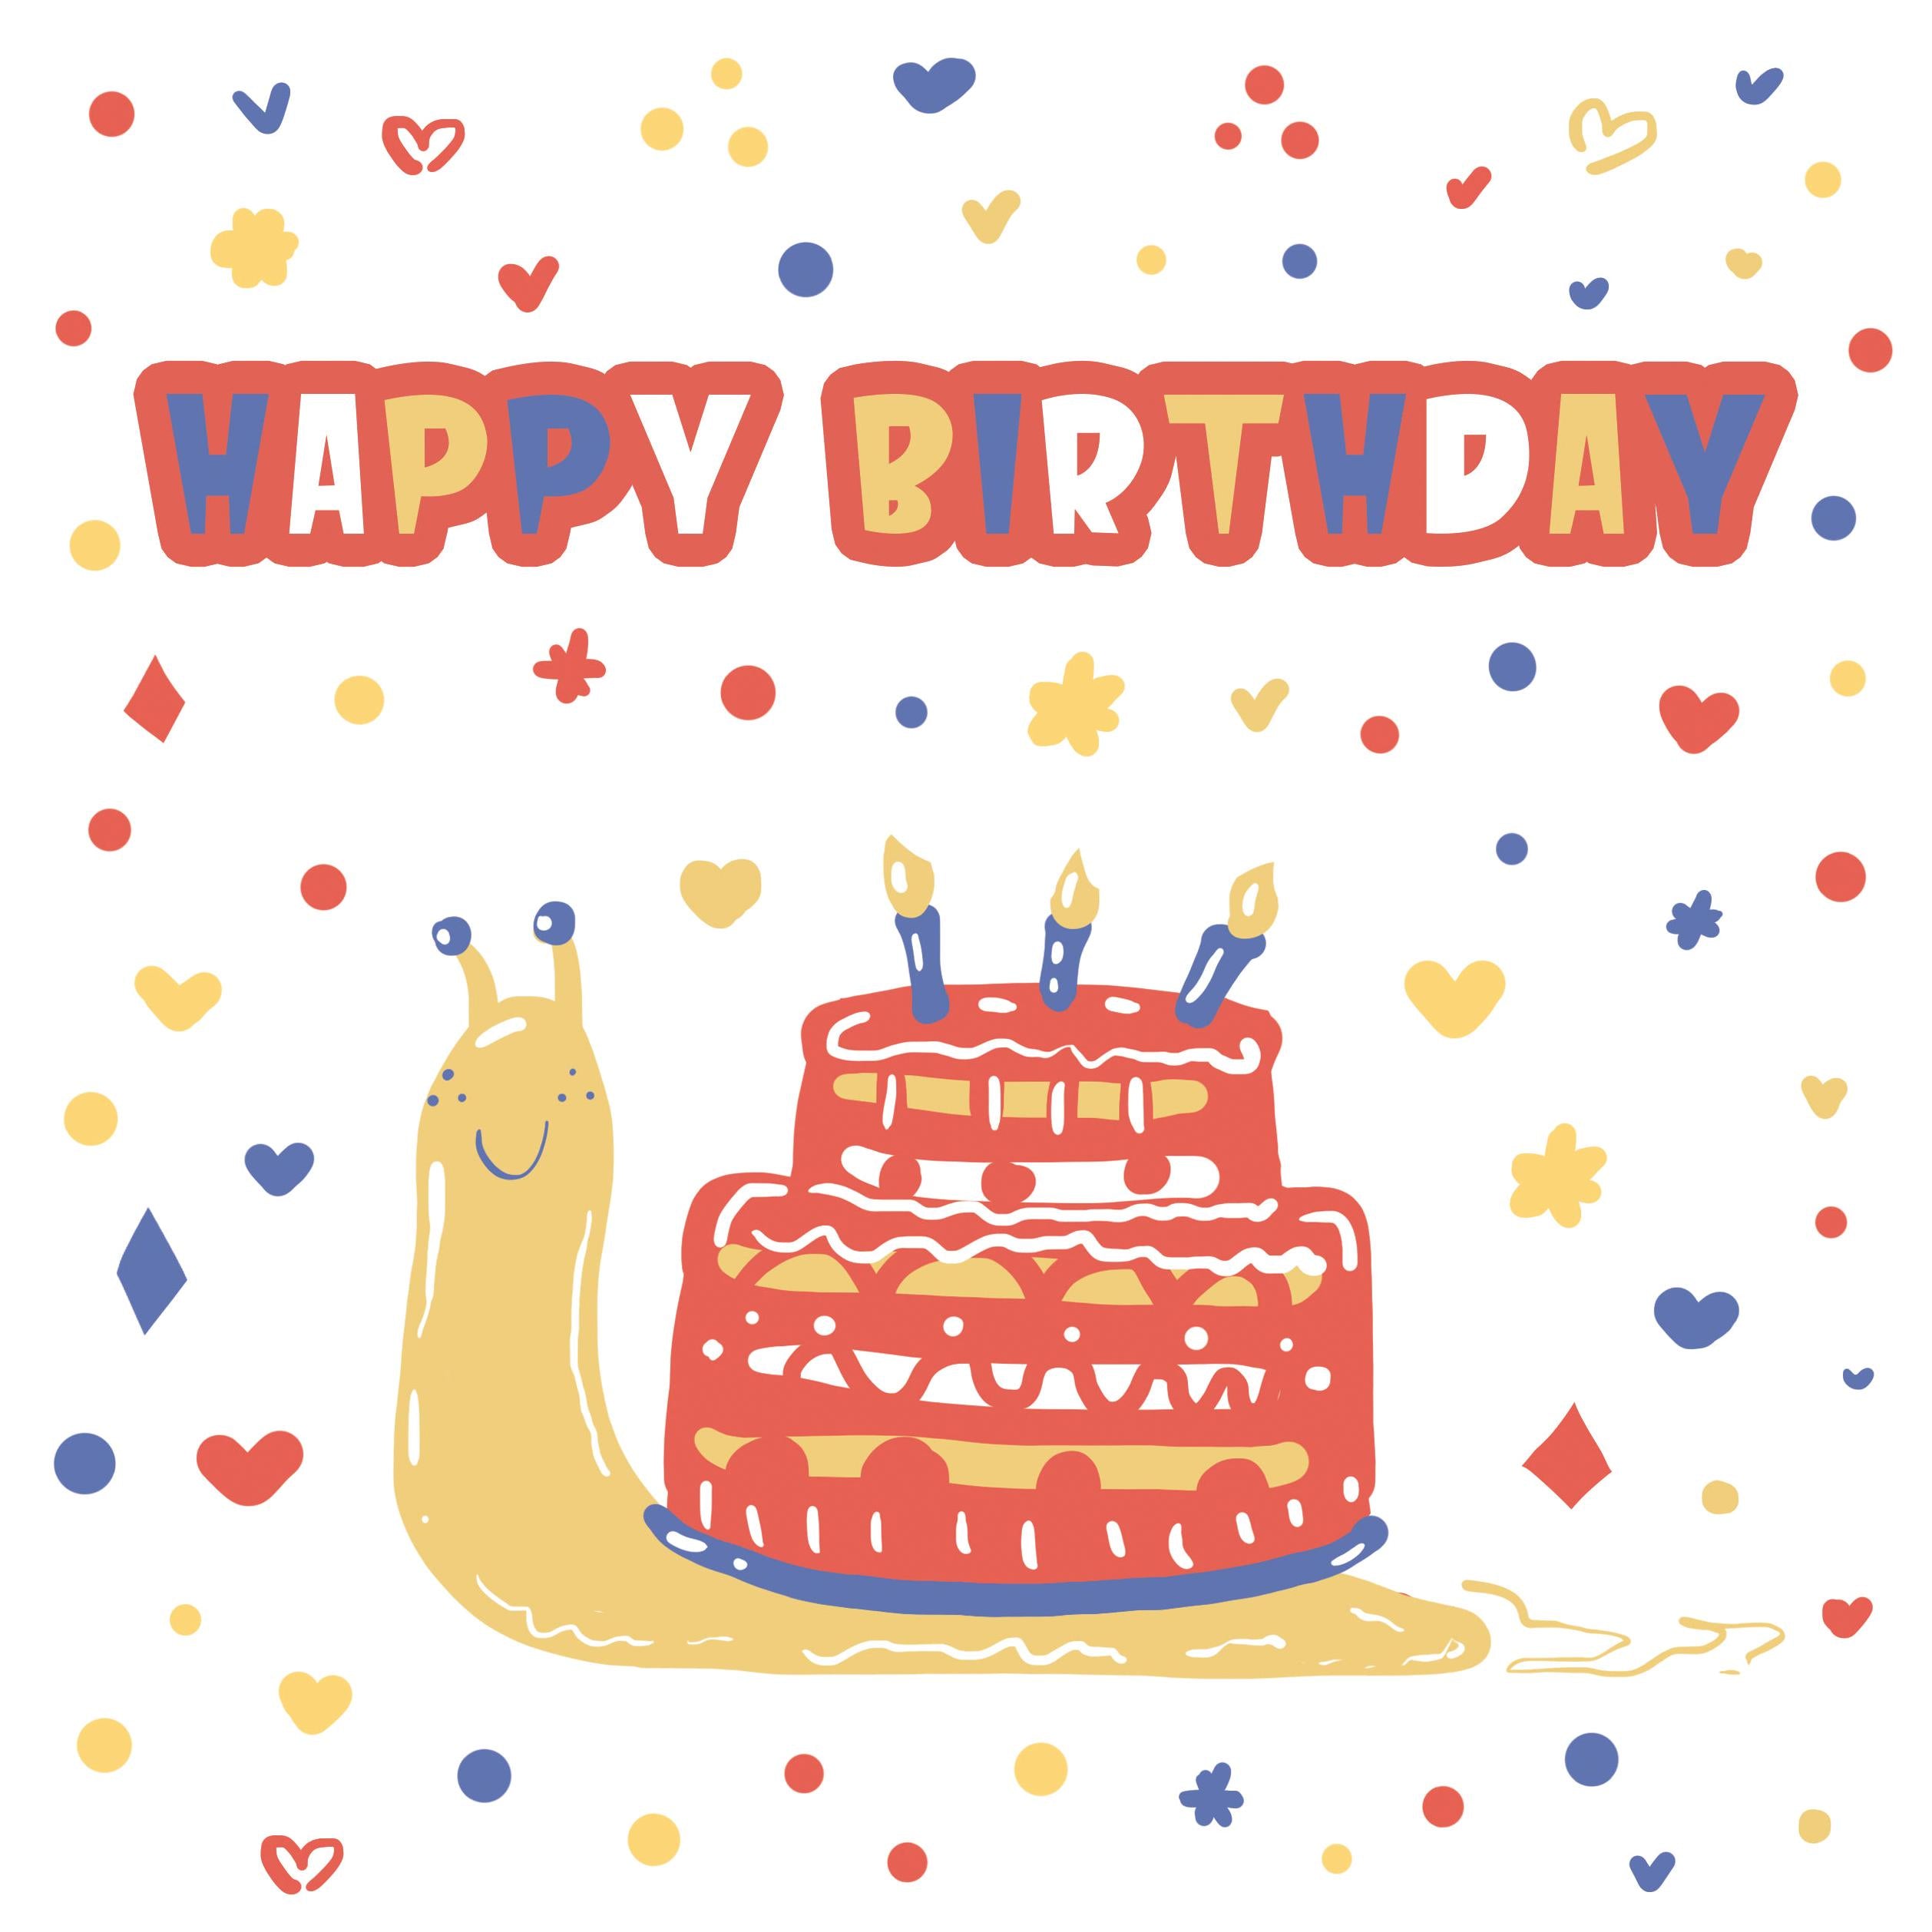 Mr Burns Birthday Cake Birthday Card Funny Simpsons Birthday - Etsy